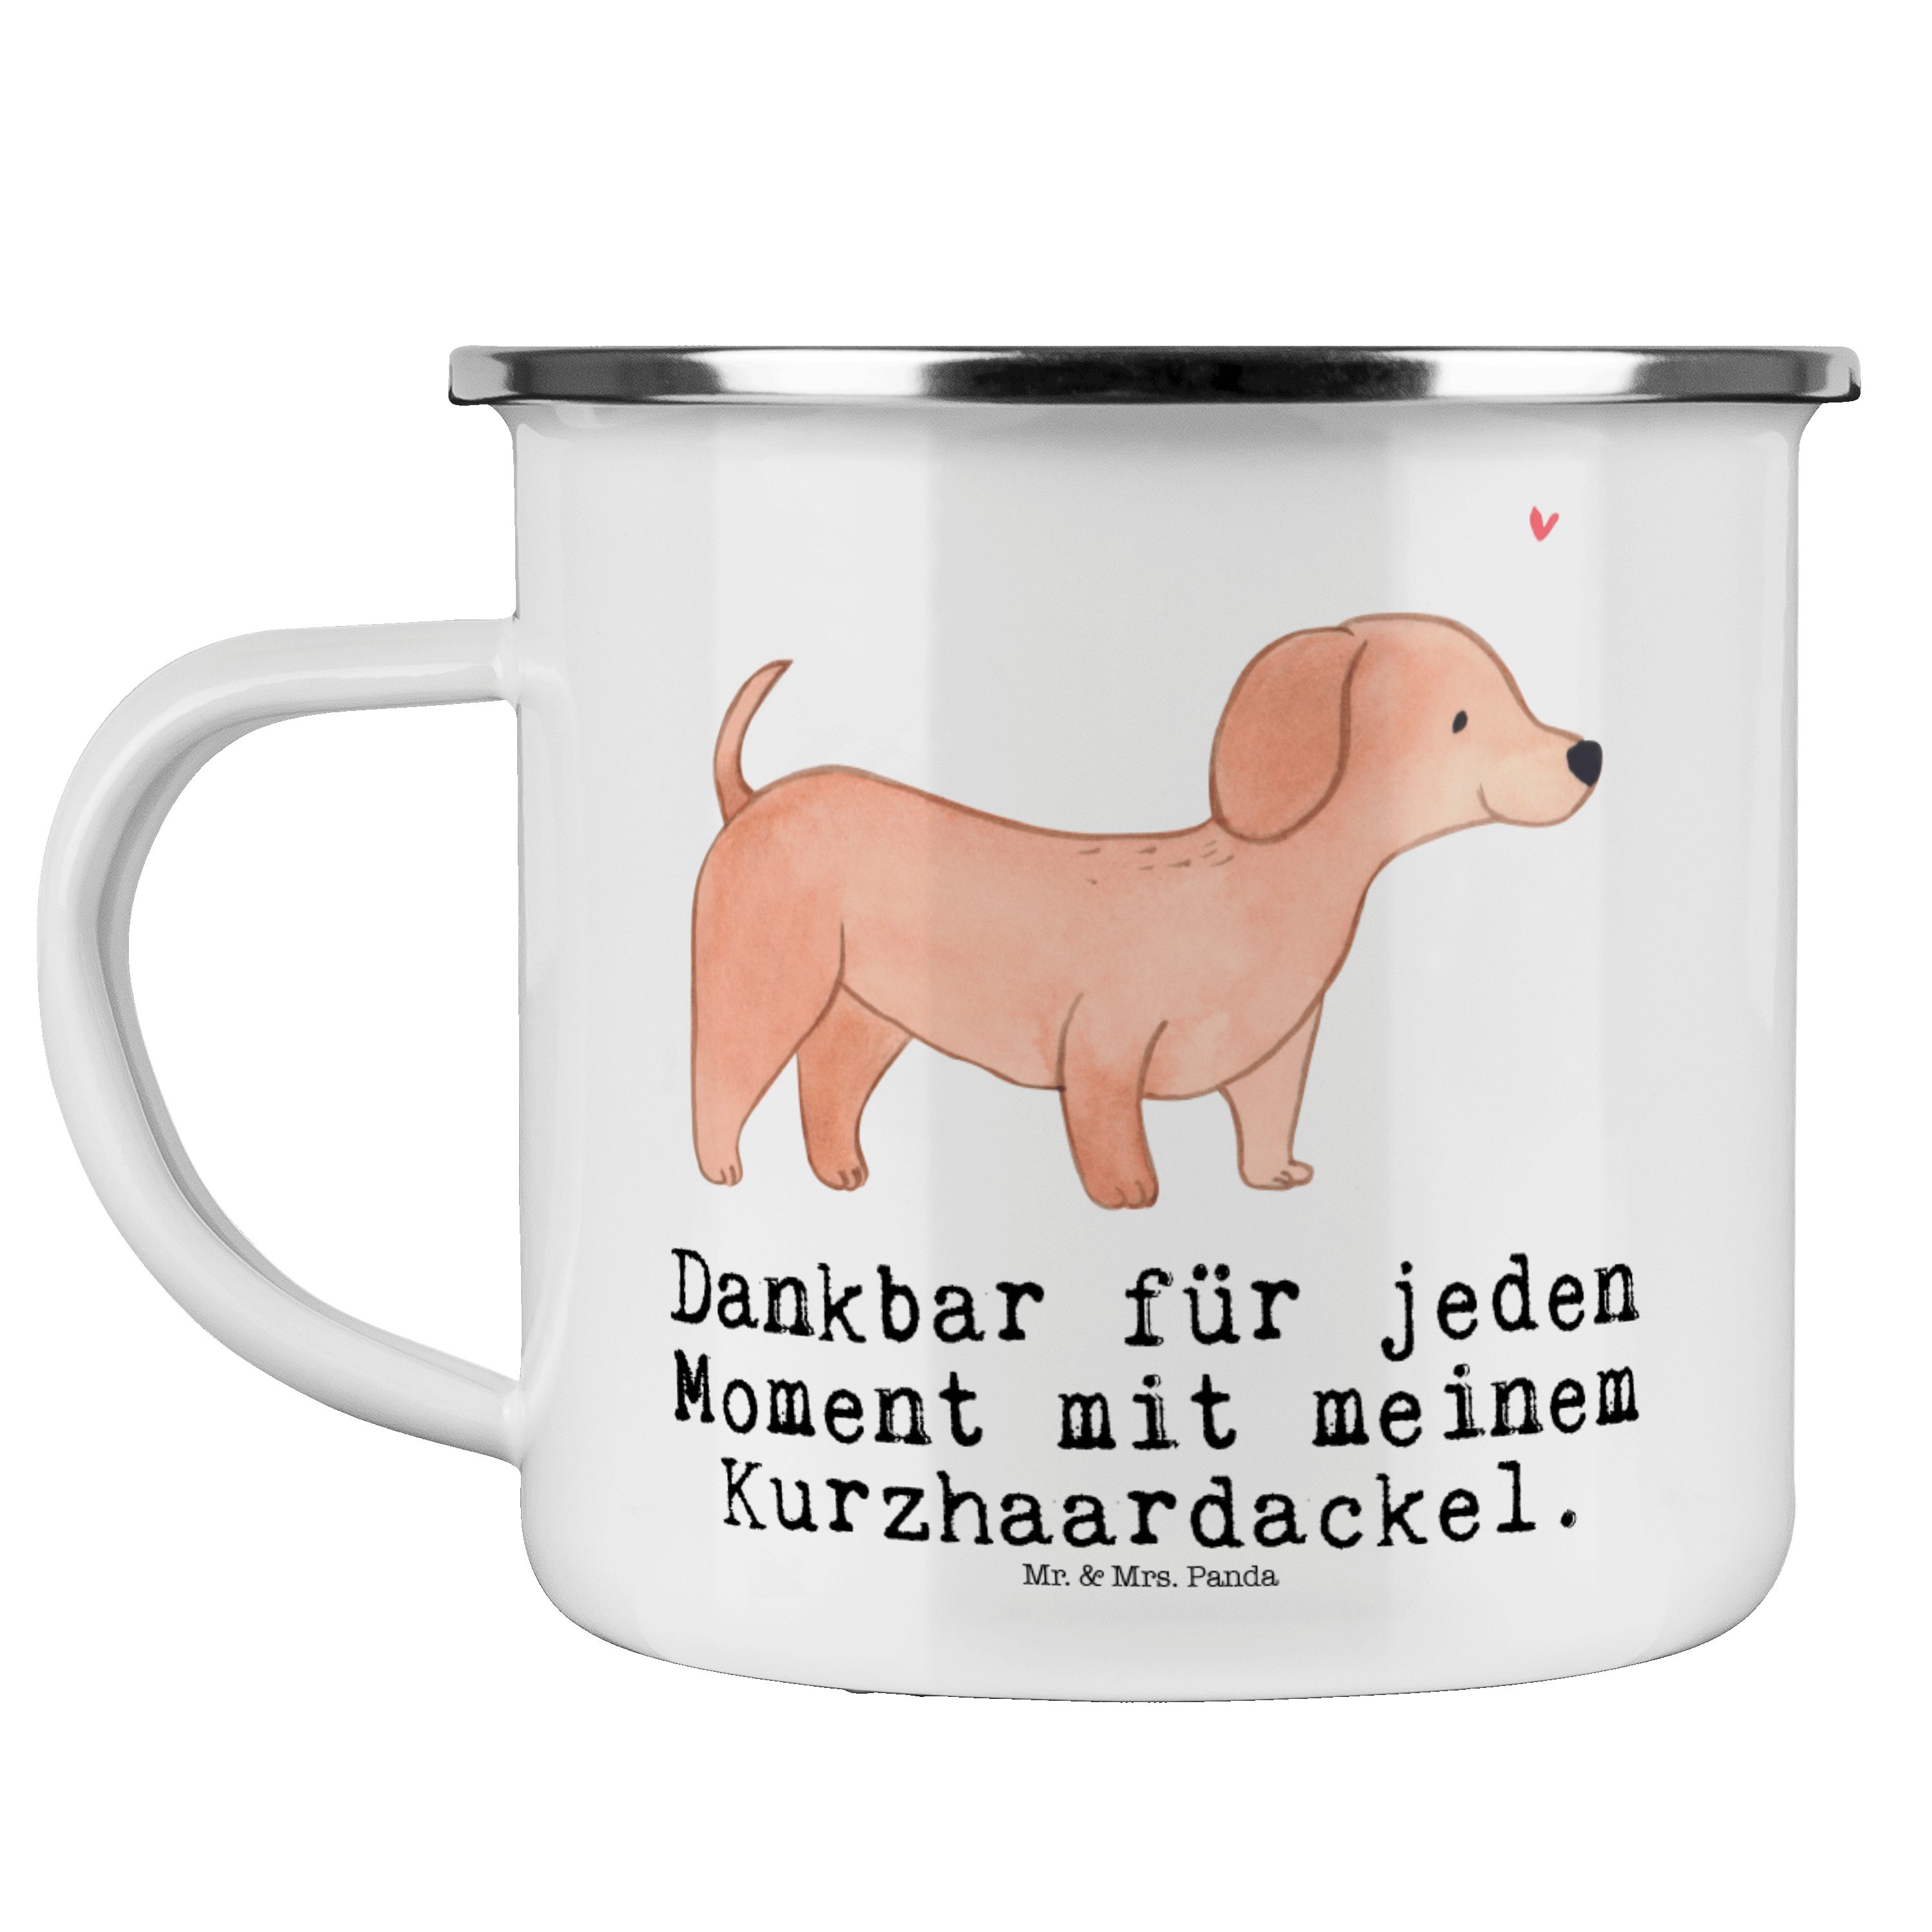 Mr. & Mrs. Panda Becher Dackel Kurzhaardackel Moment - Weiß - Geschenk, Kaffee Blechtasse, Ou, Emaille | Becher